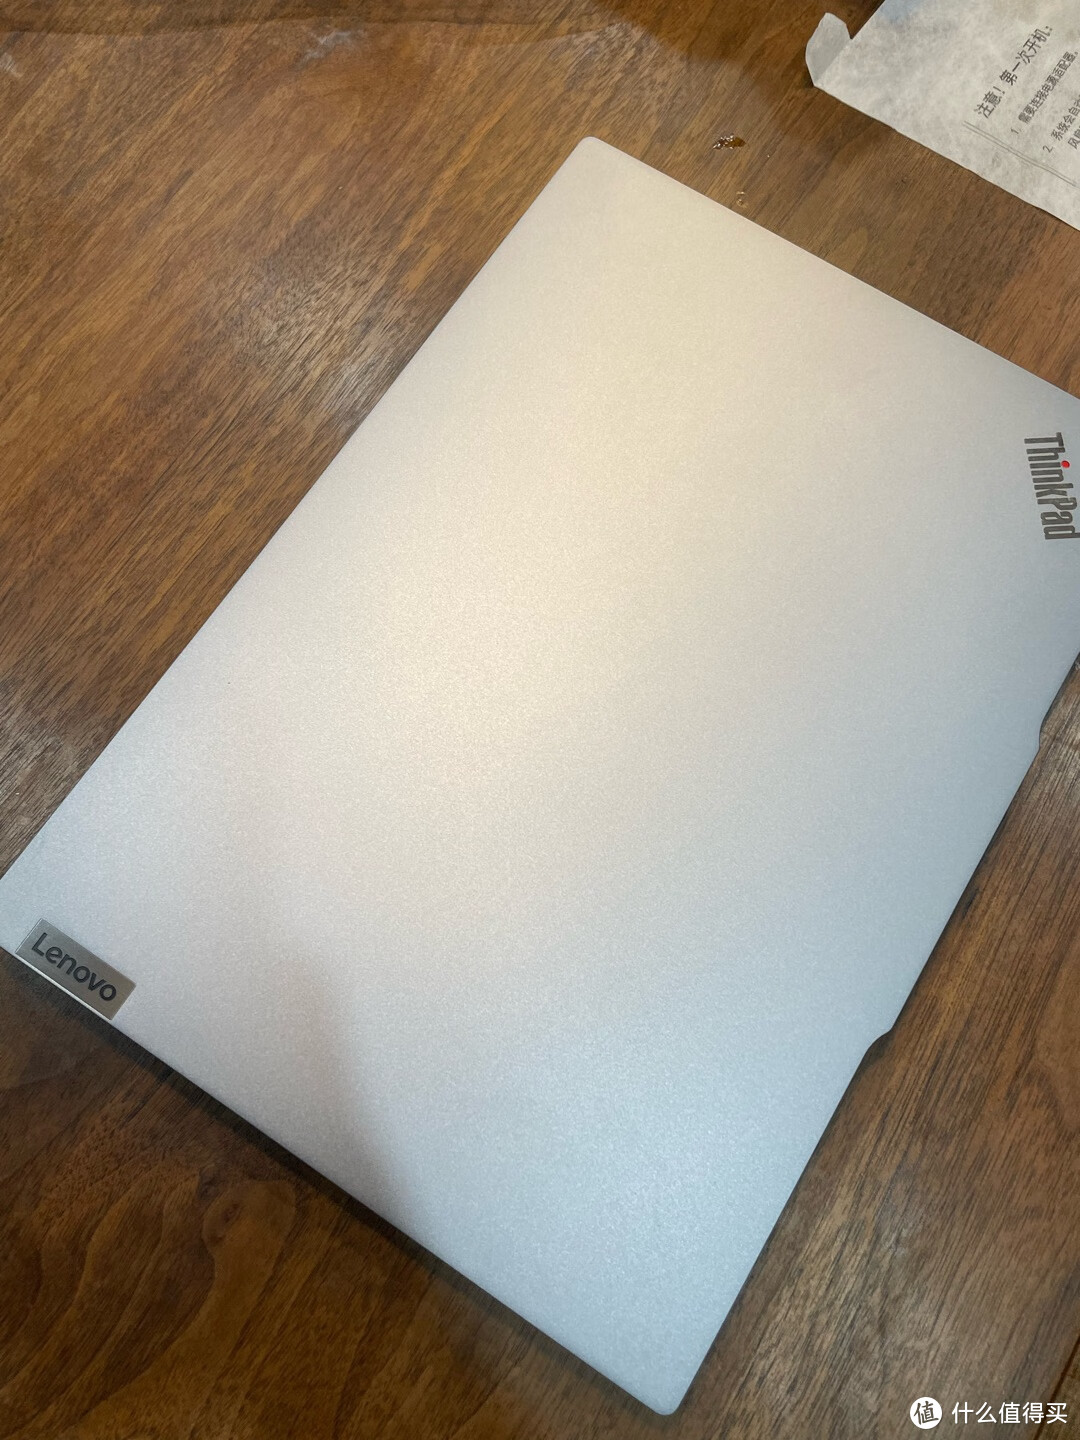 联想ThinkPad E14商务本，13代酷睿处理器，内存硬盘可扩展